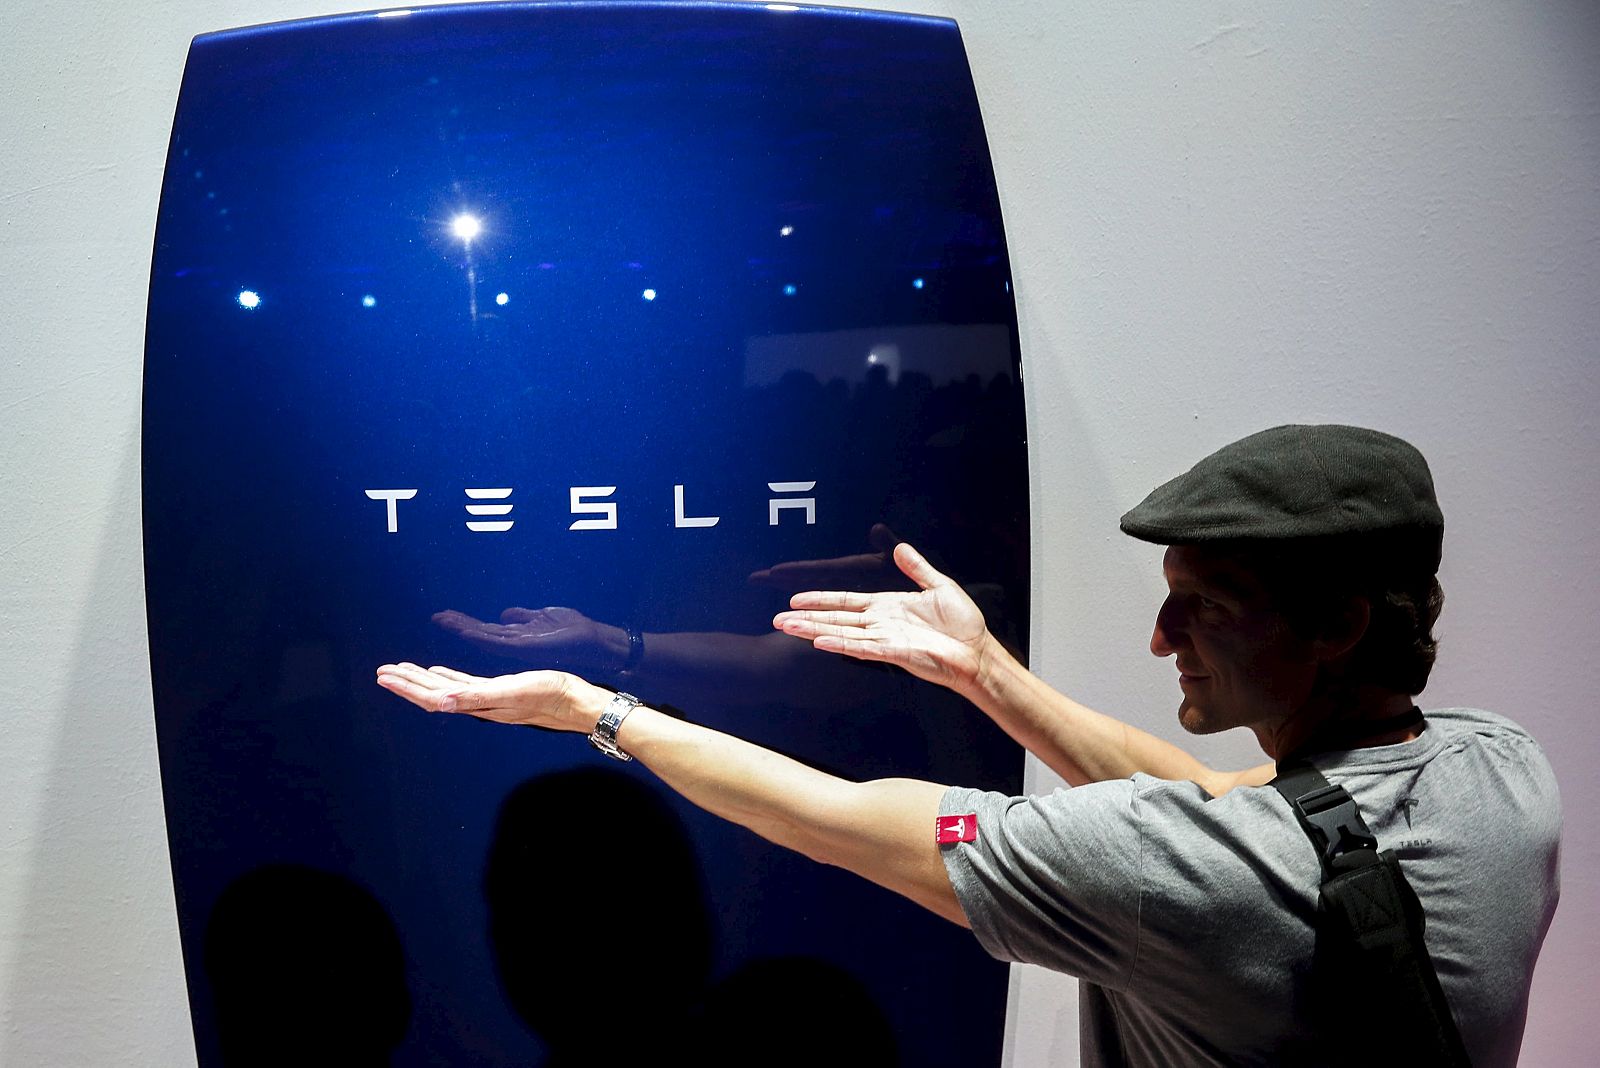 Tesla ha presentado unas baterías para almacenar energía eléctrica en los hogares y en las pequeñas empresas.